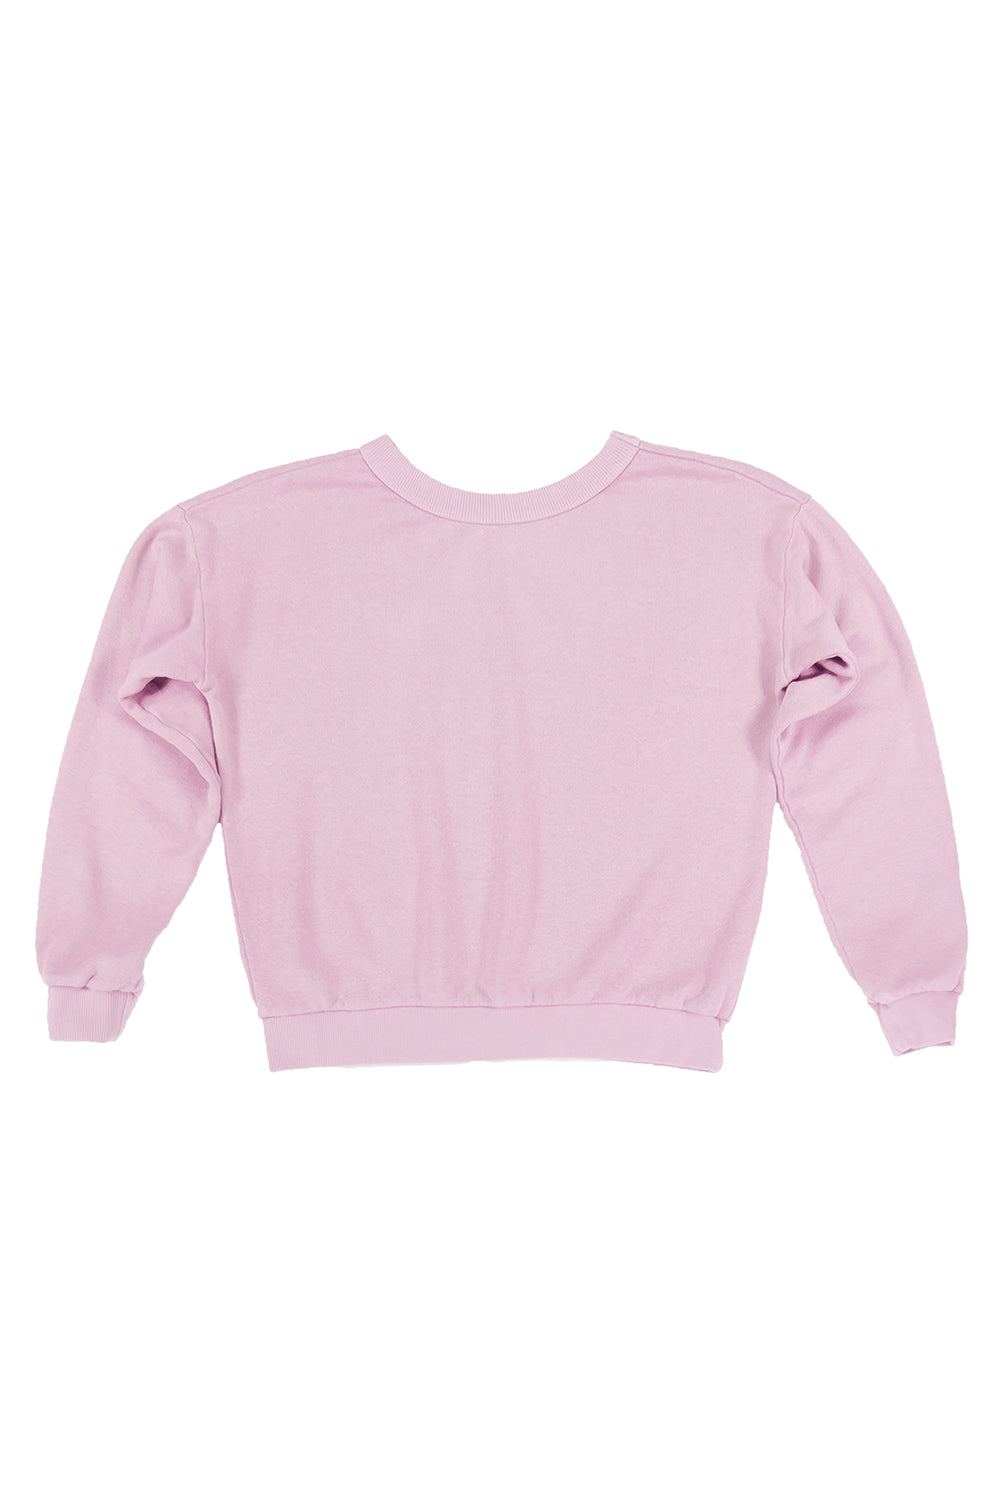 Crux Cropped Sweatshirt | Jungmaven Hemp Clothing & Accessories / Color: Rose Quartz